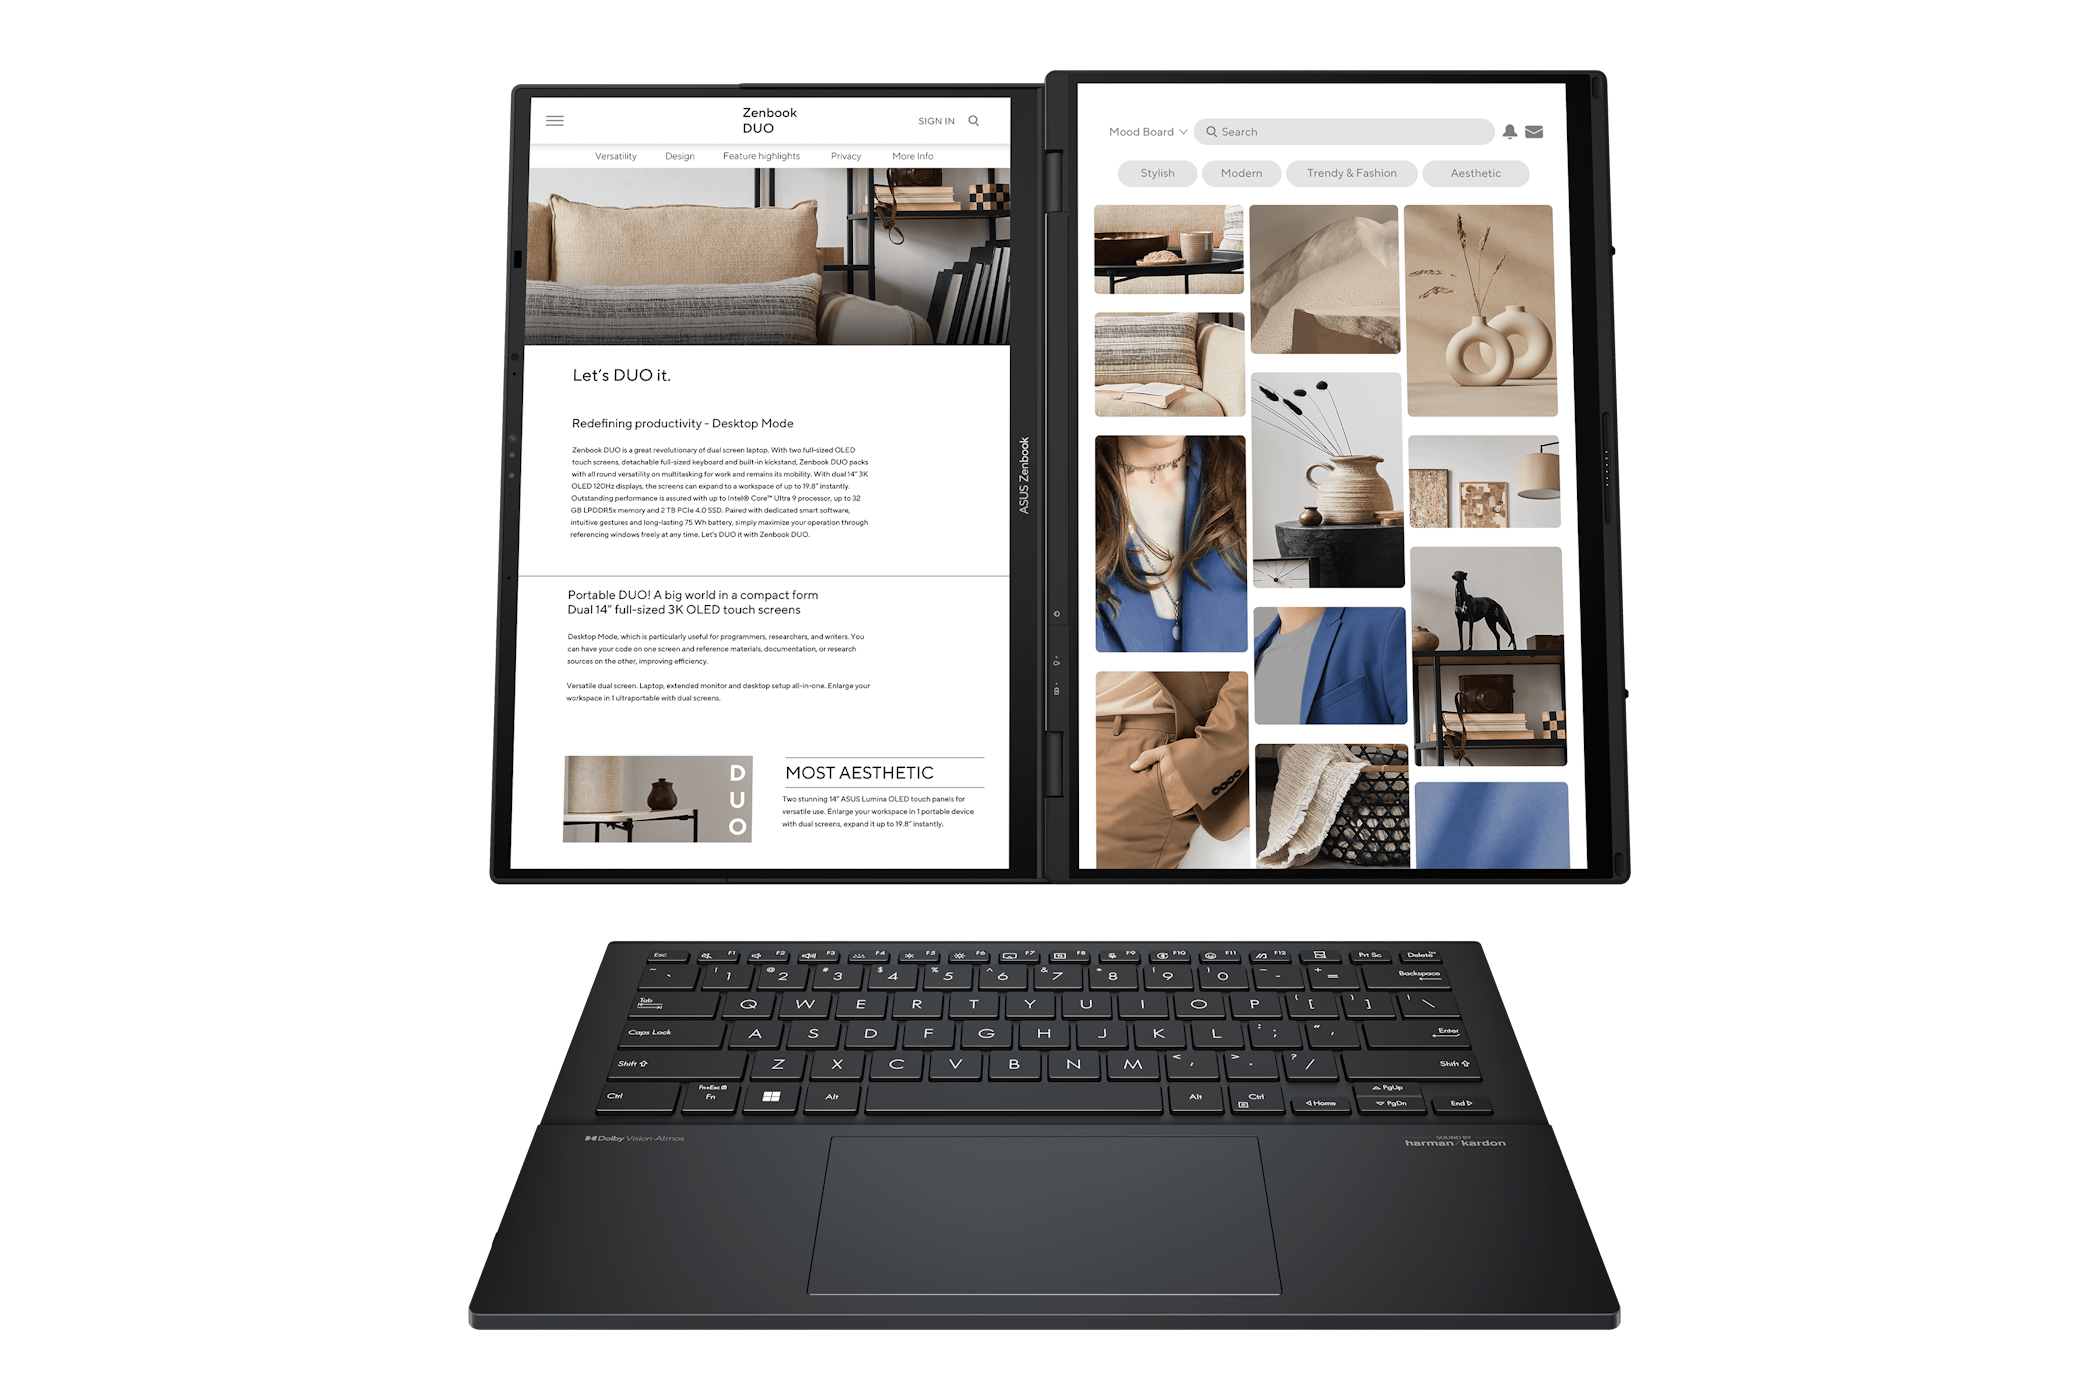 The Zenbook Duo laptop, desktop mode